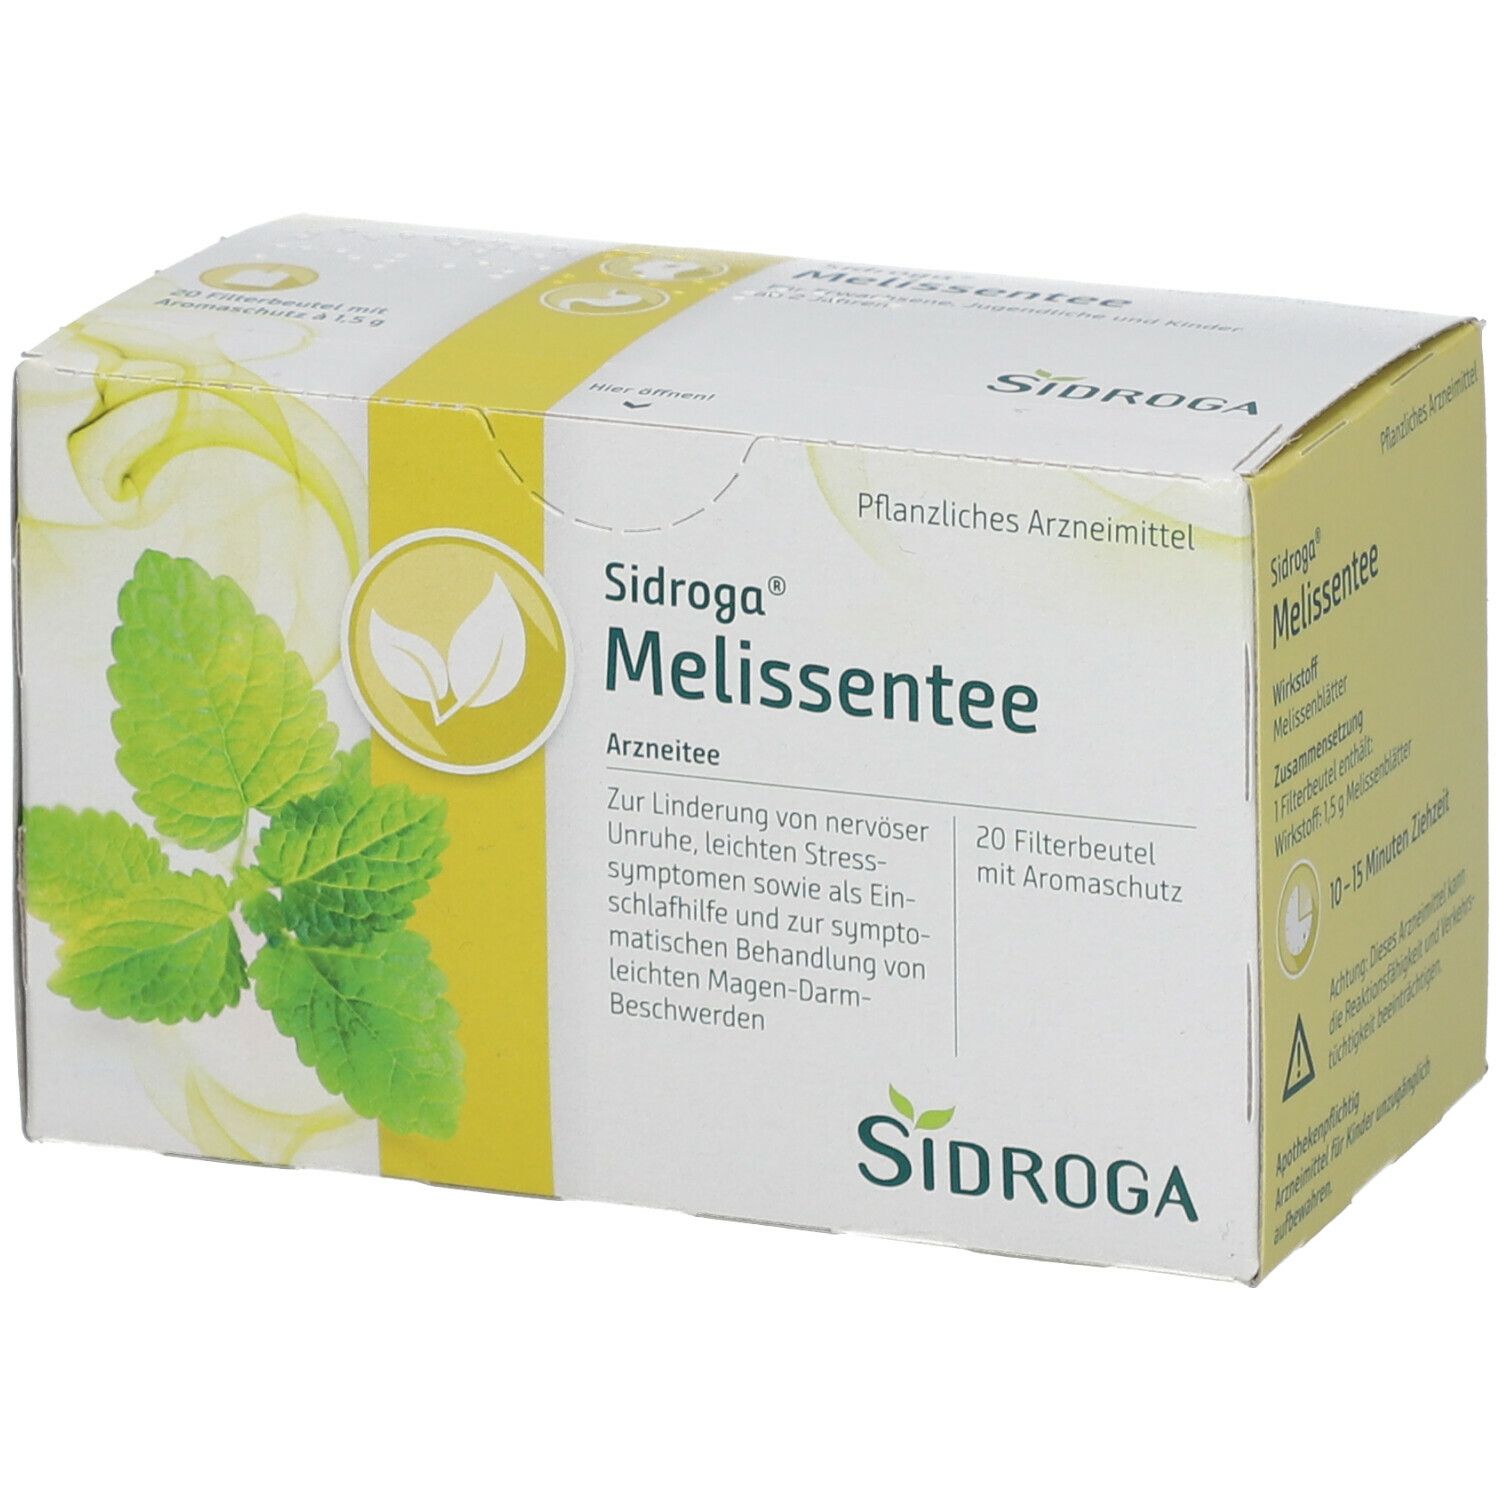 Sidroga® Melissentee